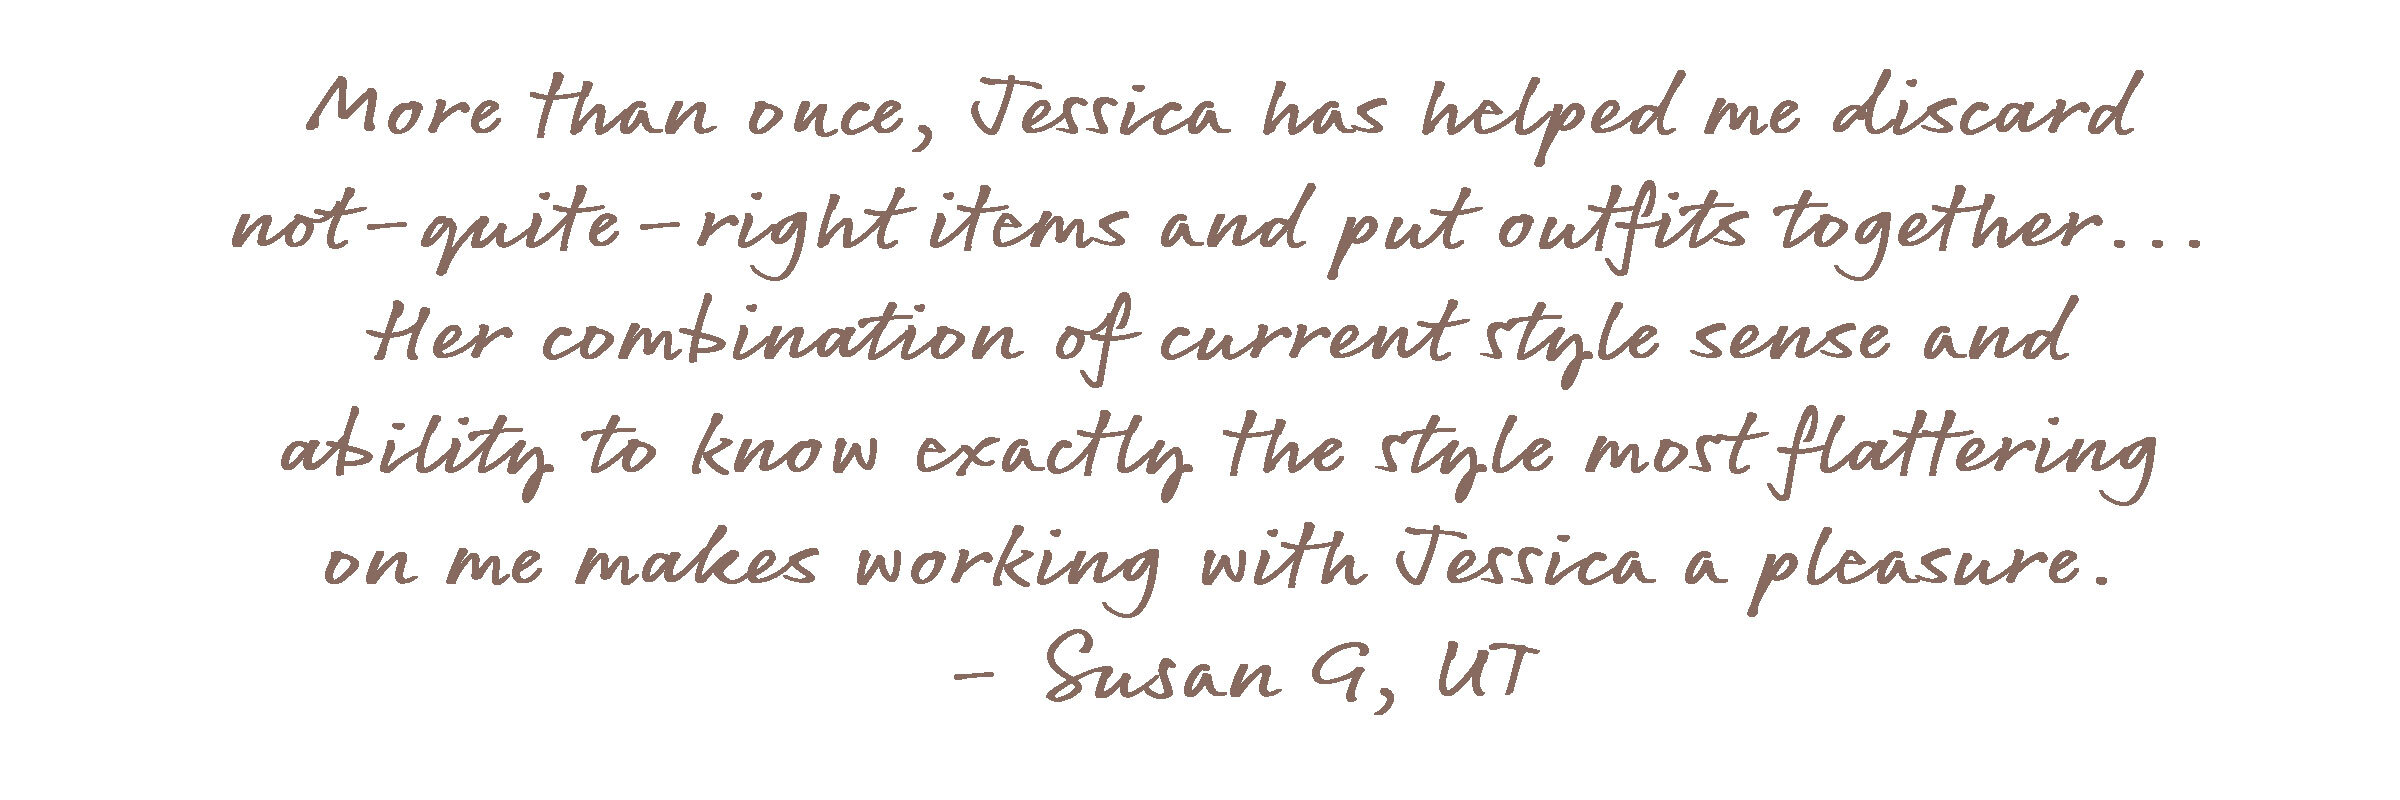 Customer-Testimonial---Susan-G.jpg